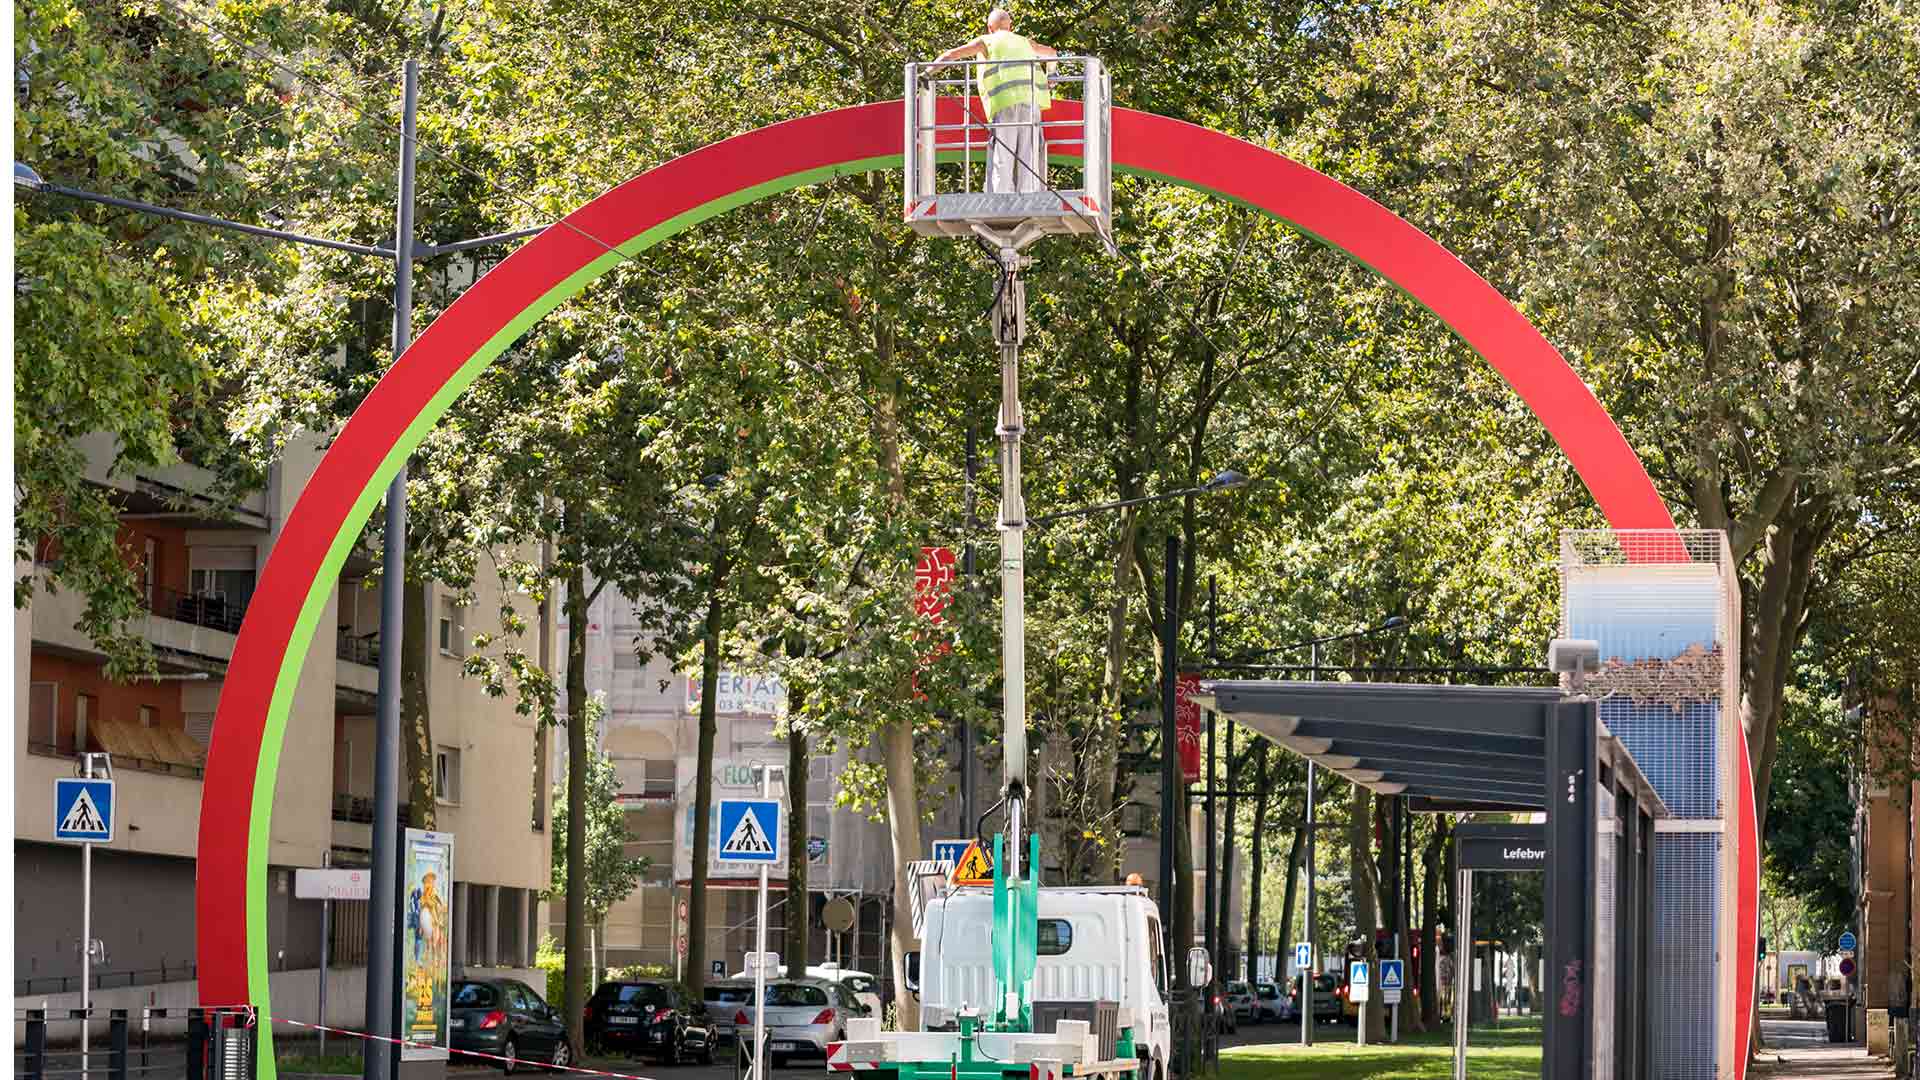 Restauration d'une arche de Buren à Mulhouse à la station de tram "Lefebvre"